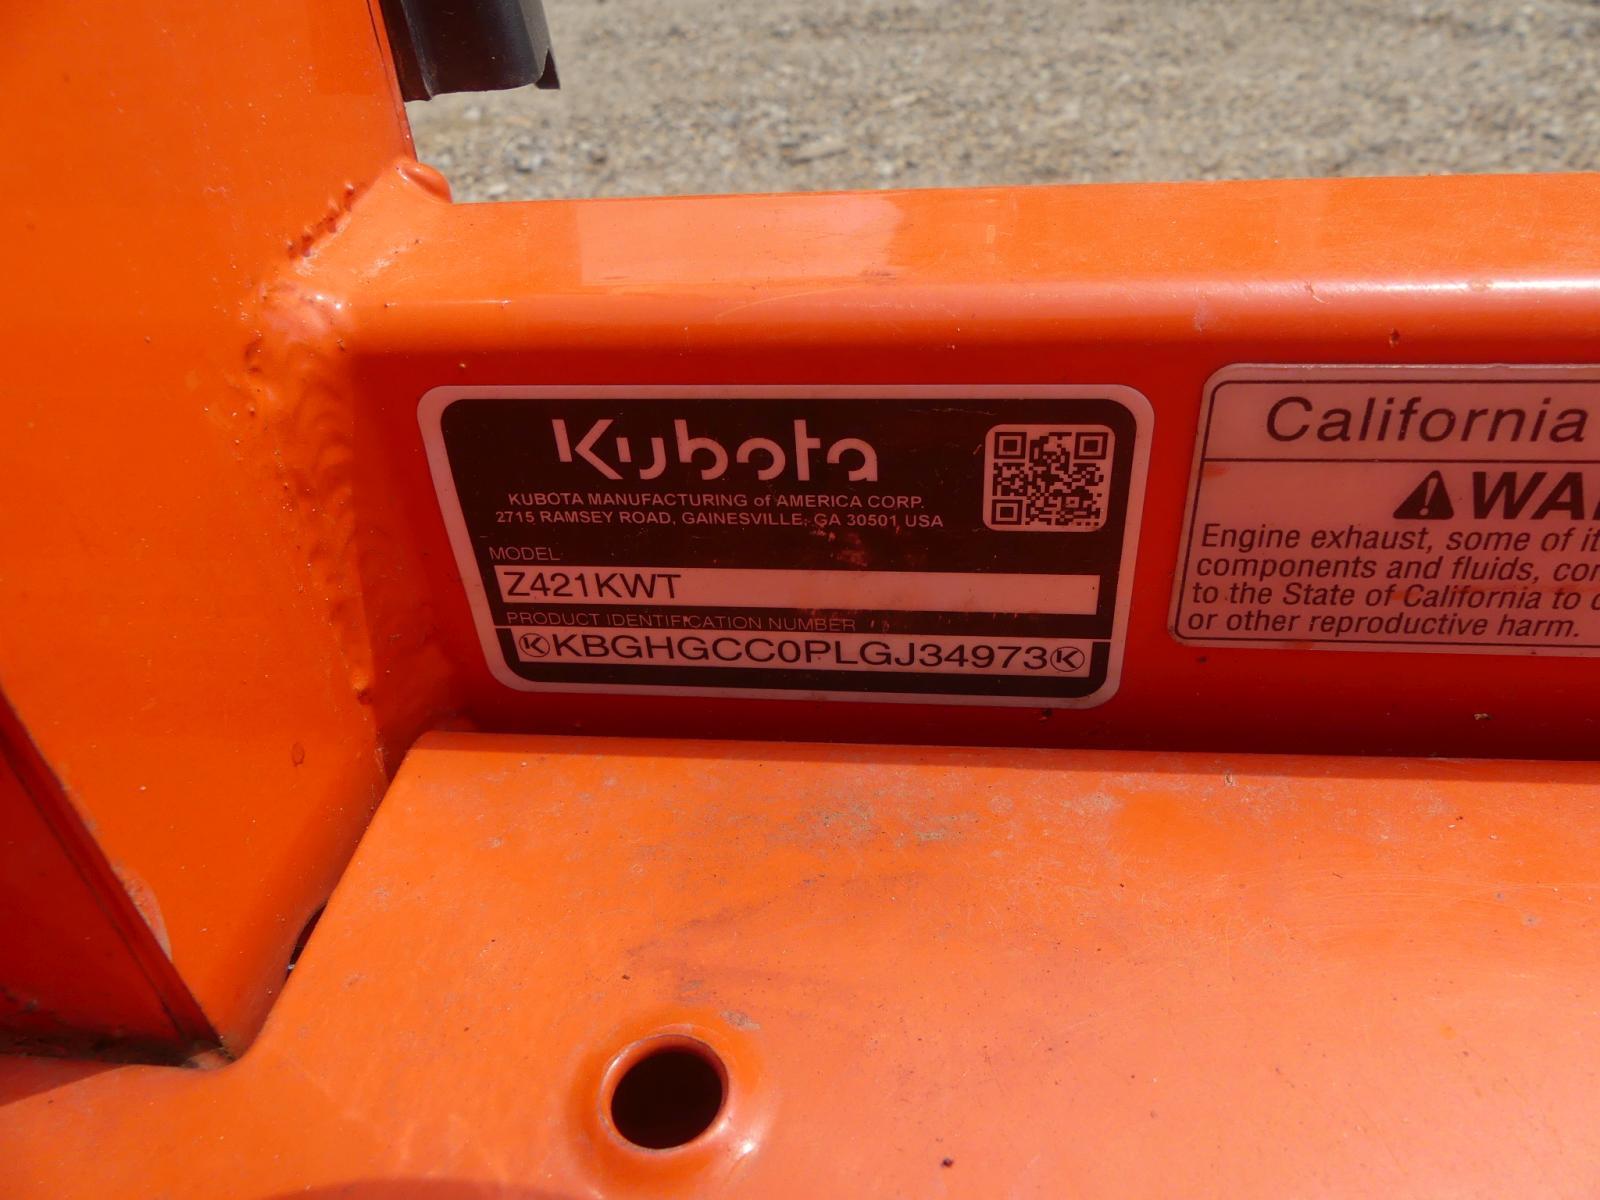 2020 Kubota Z421 Zero-turn Mower, s/n KBGHGCC0PLGJ34973: Warranty Until 07/